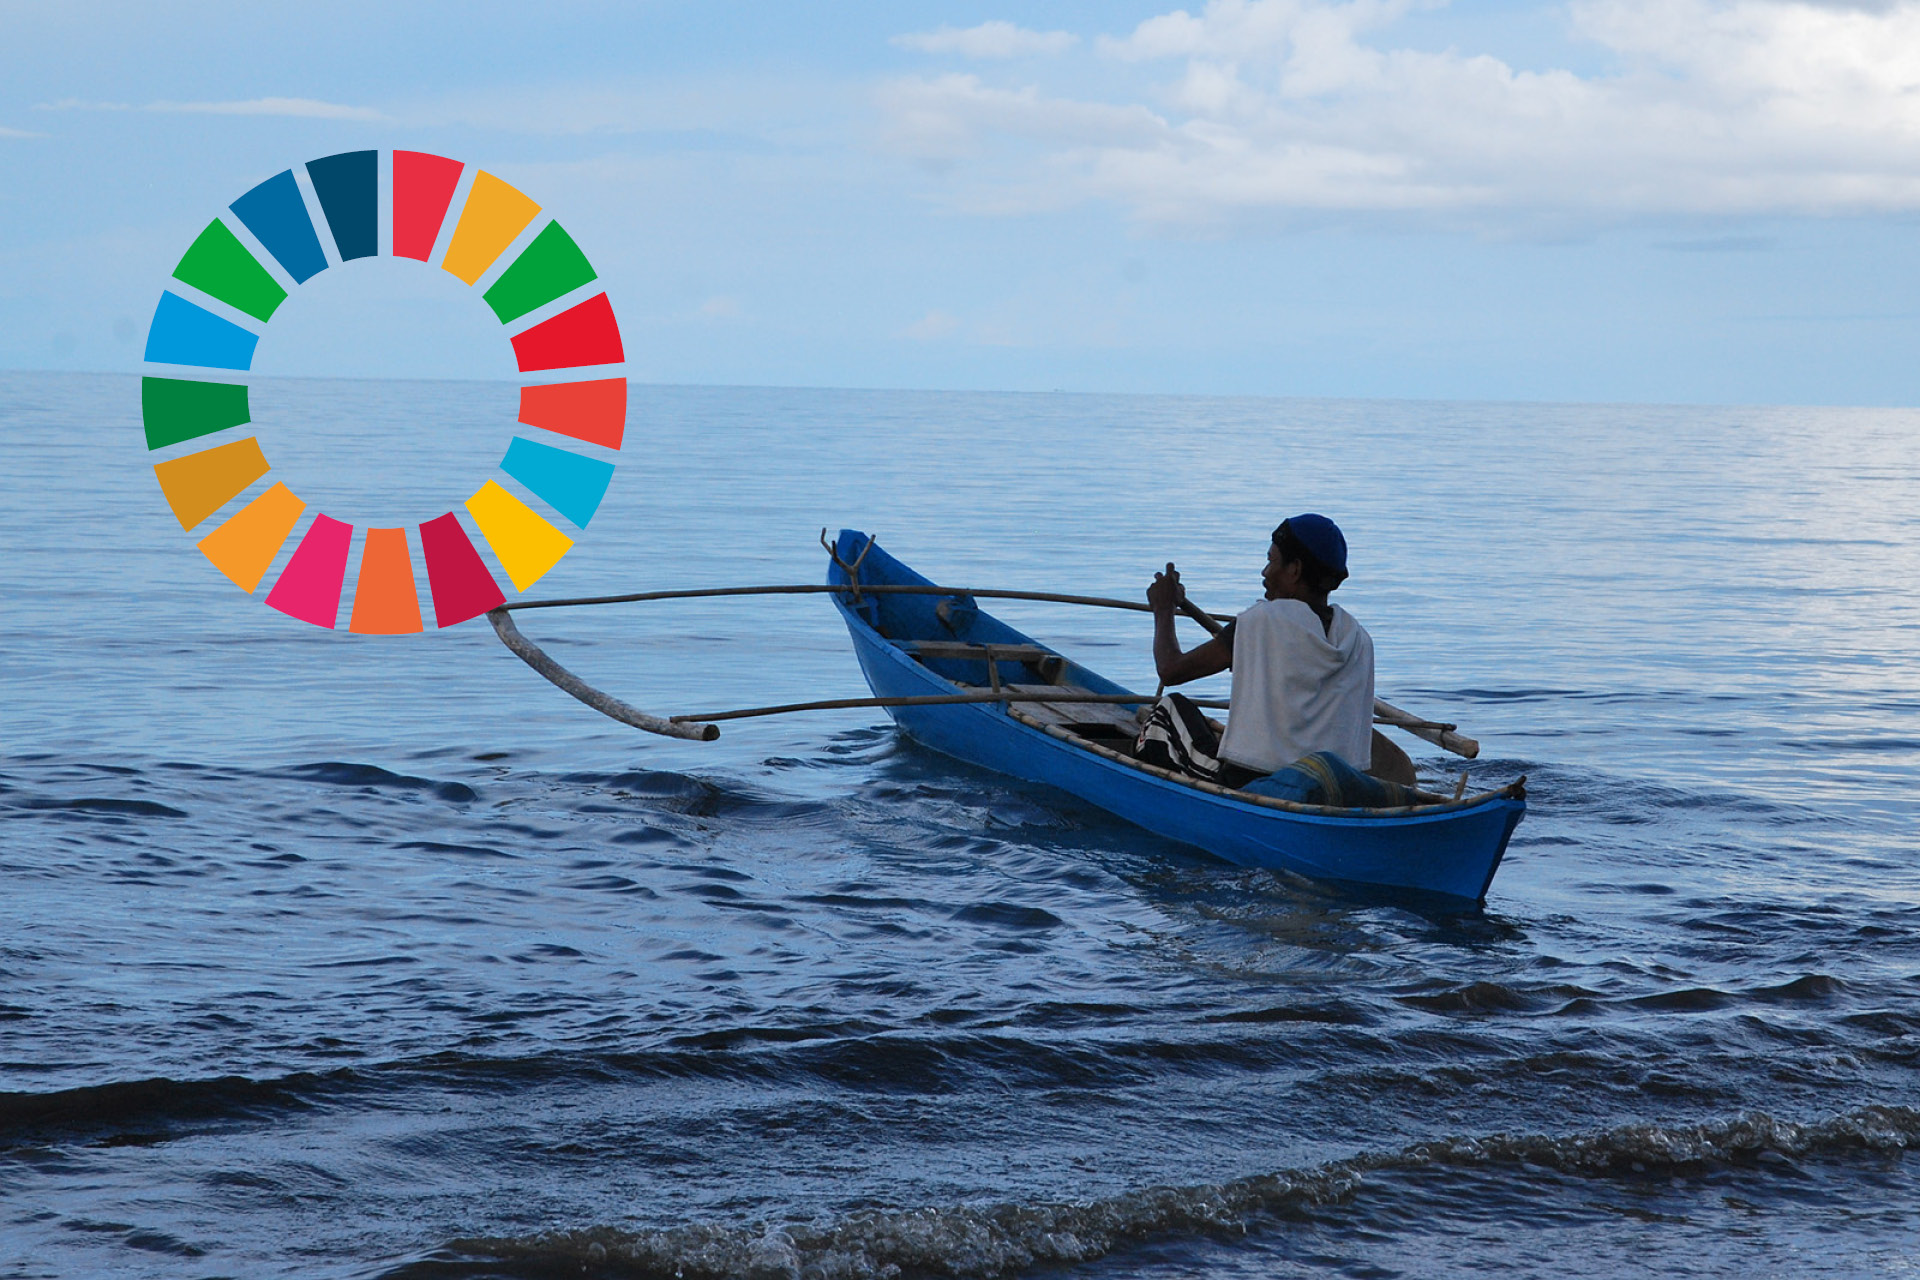 Fiskare från Indonesien, ensam i blå båt ute på havet. Till vänster syns loggan för Agenda 2030.